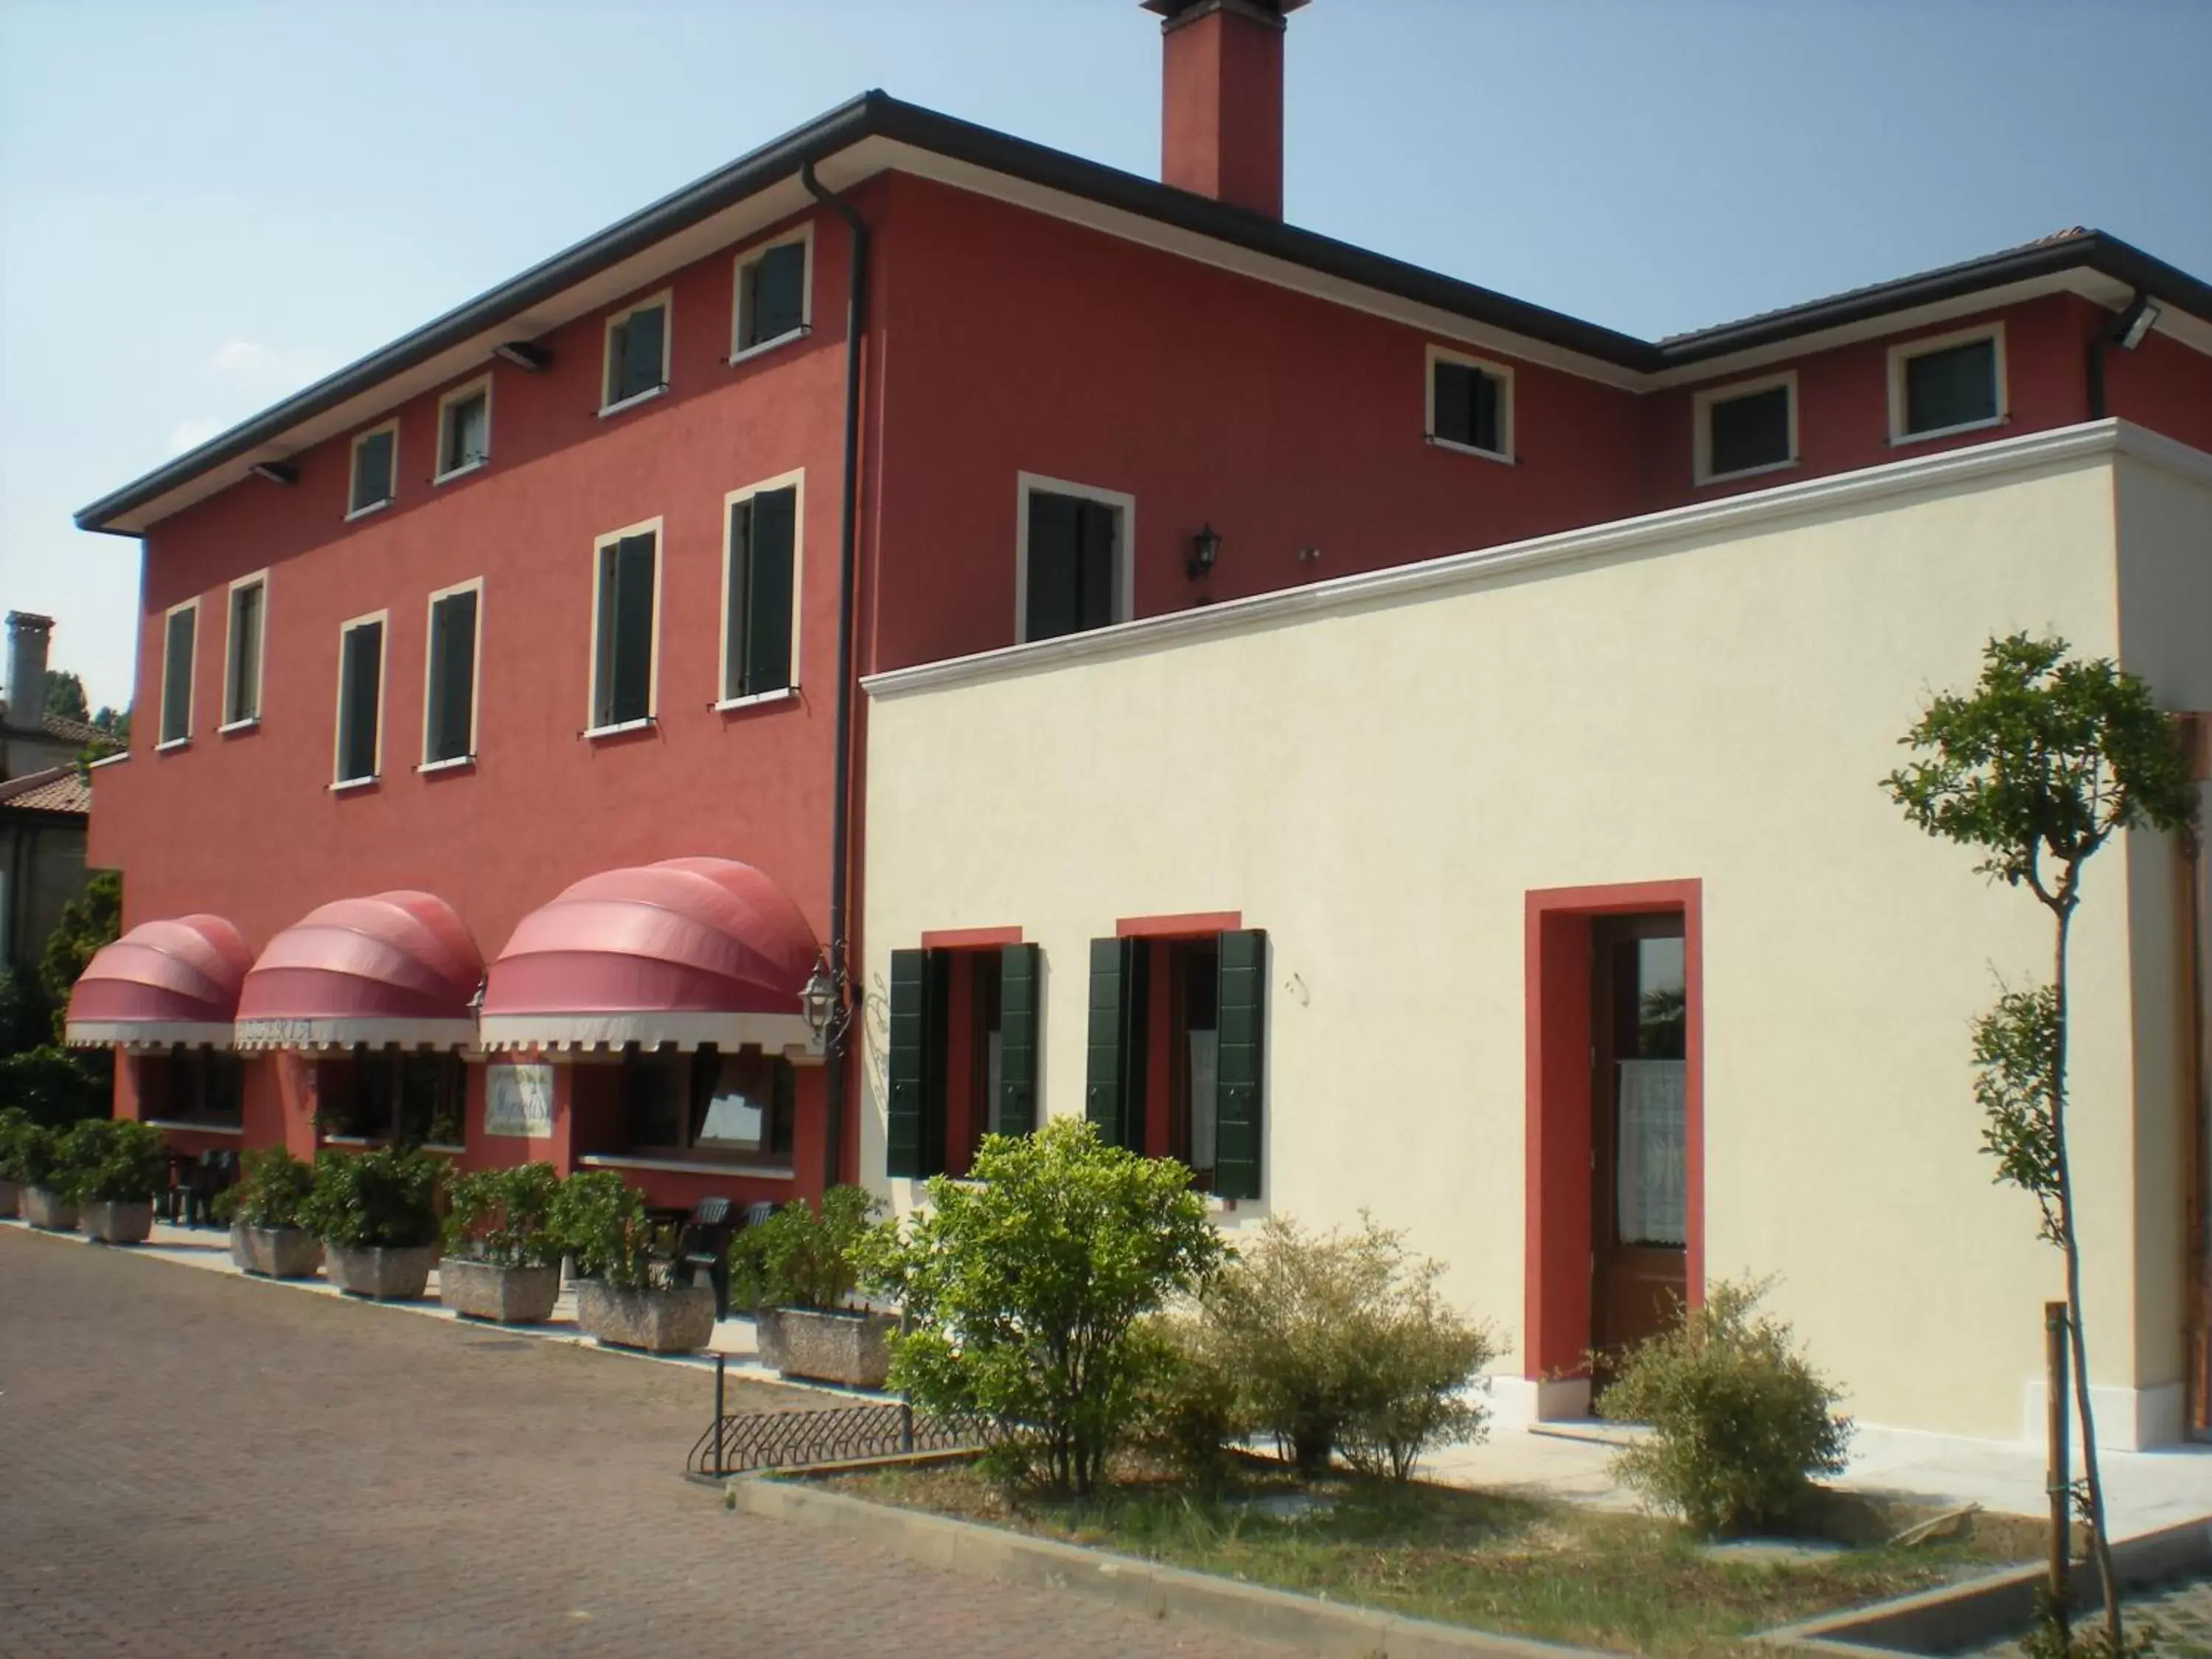 Restaurant/places to eat, Facade/Entrance in Villa Myosotis